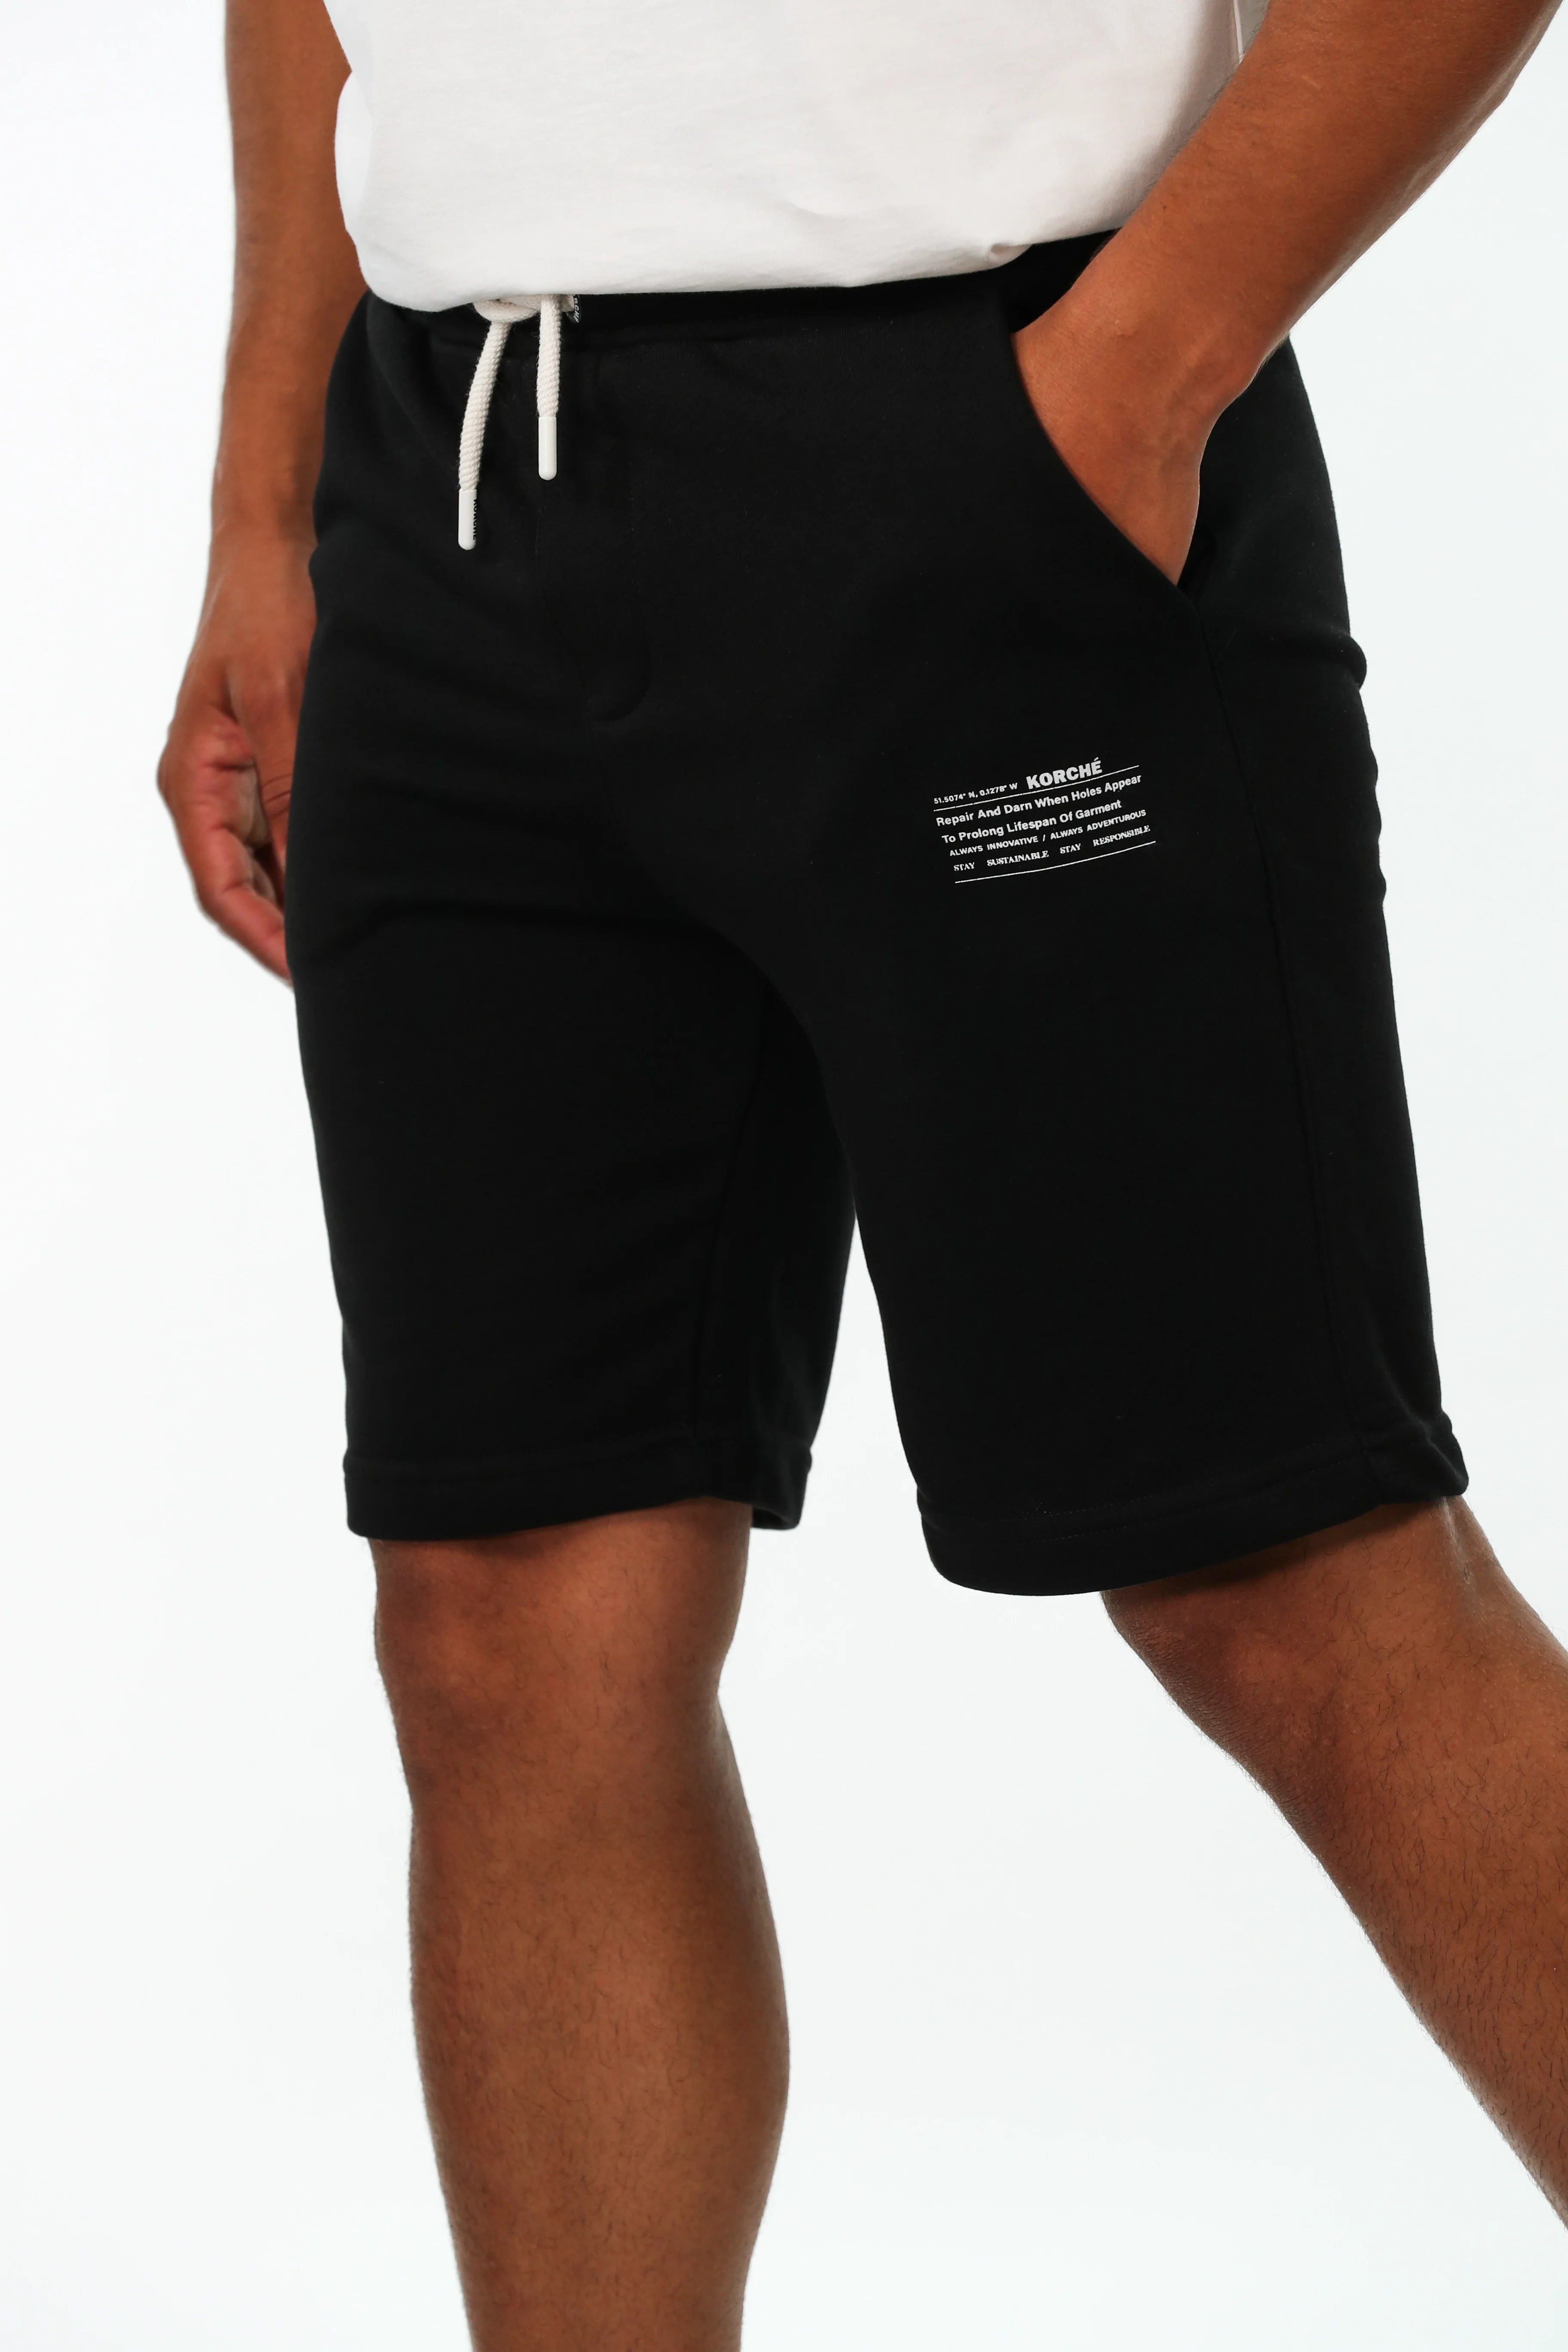 Black Cotton Short With"Korshe"Front Design